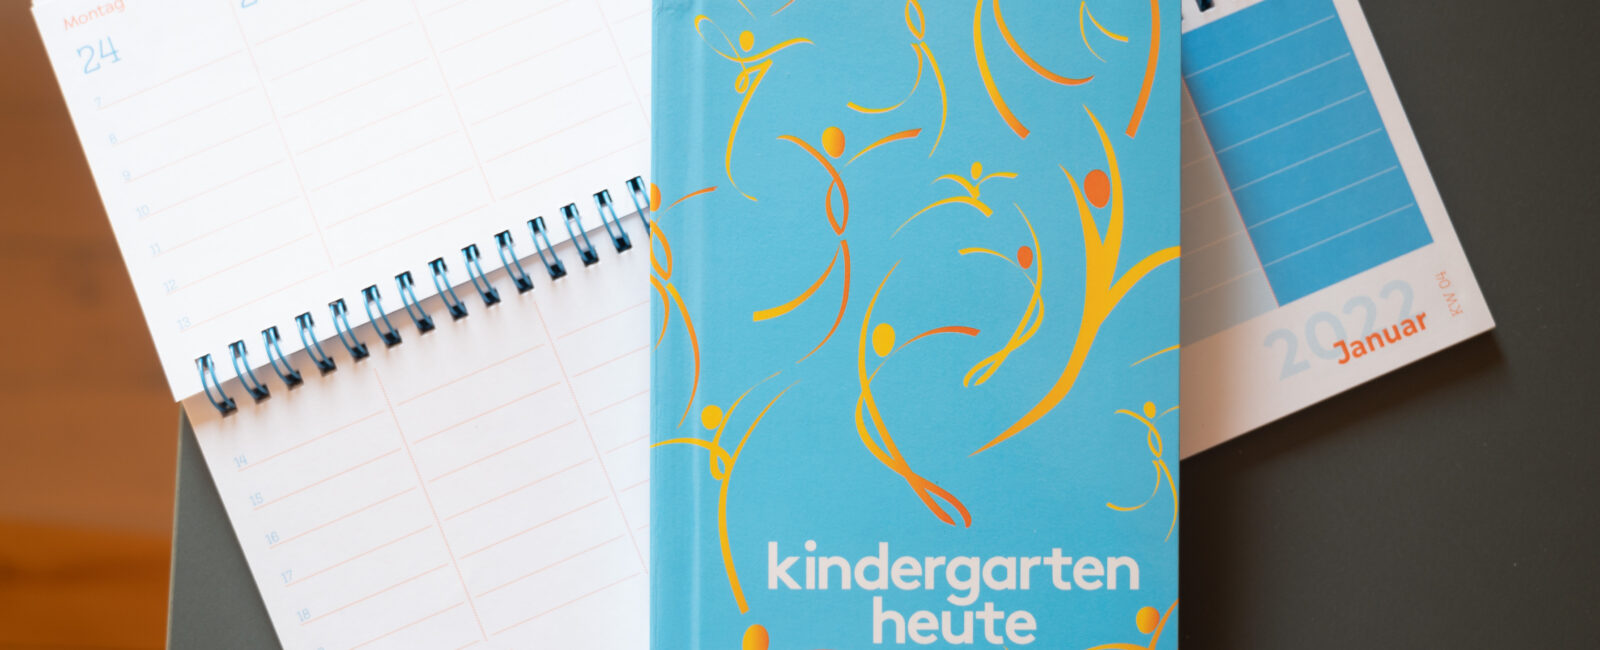 Produktfoto Kindergarten heute Tischkalender und Taschenkalender in Blau mit orangenen Figuren auf dem Cover